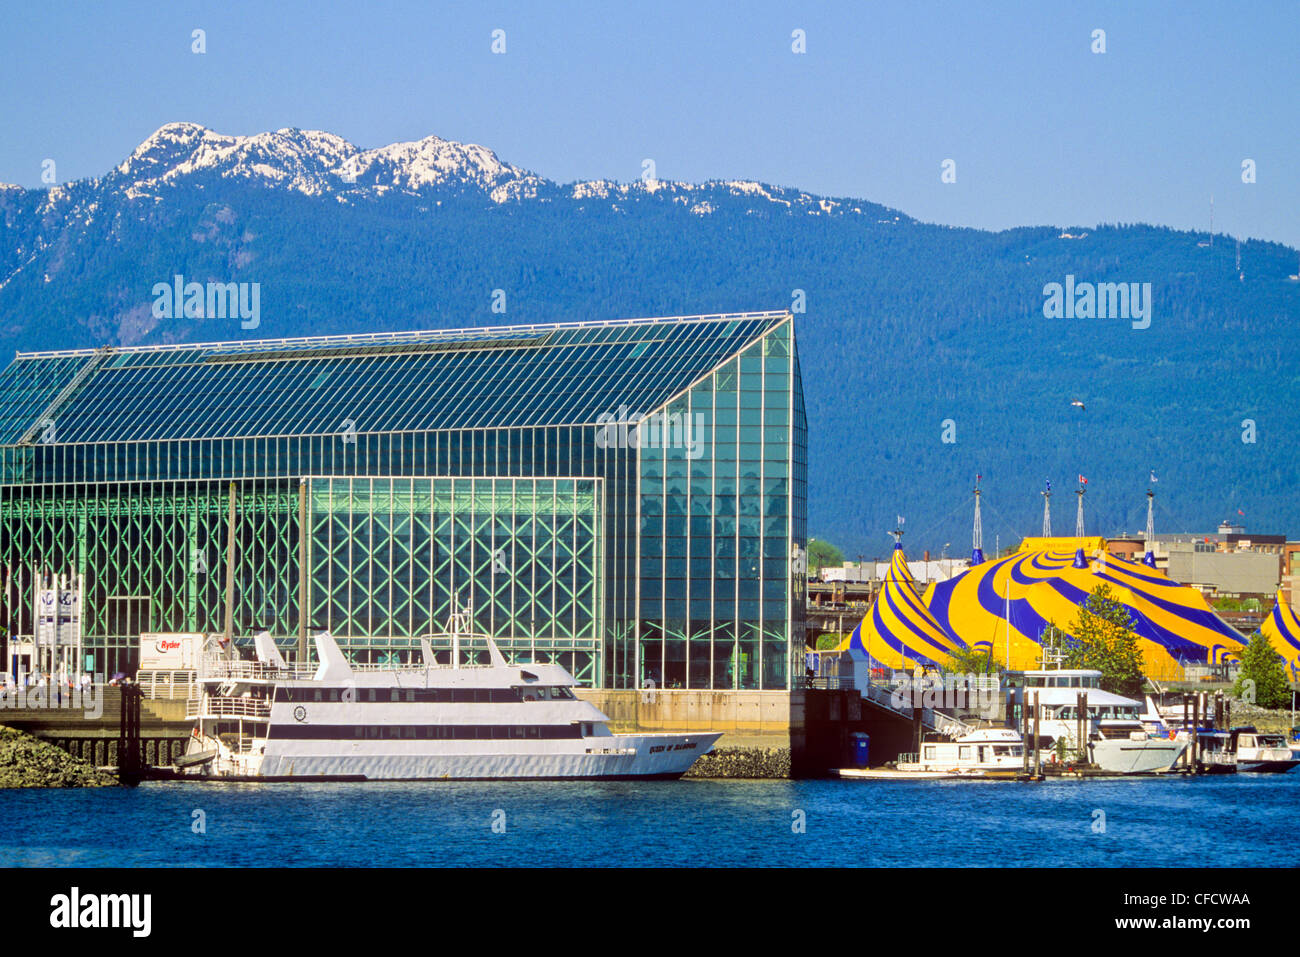 Pleasure boats and Cirque de soleil tents, Plaza of Nations, False Creek, Vancouver, British Columbia, Canada Stock Photo